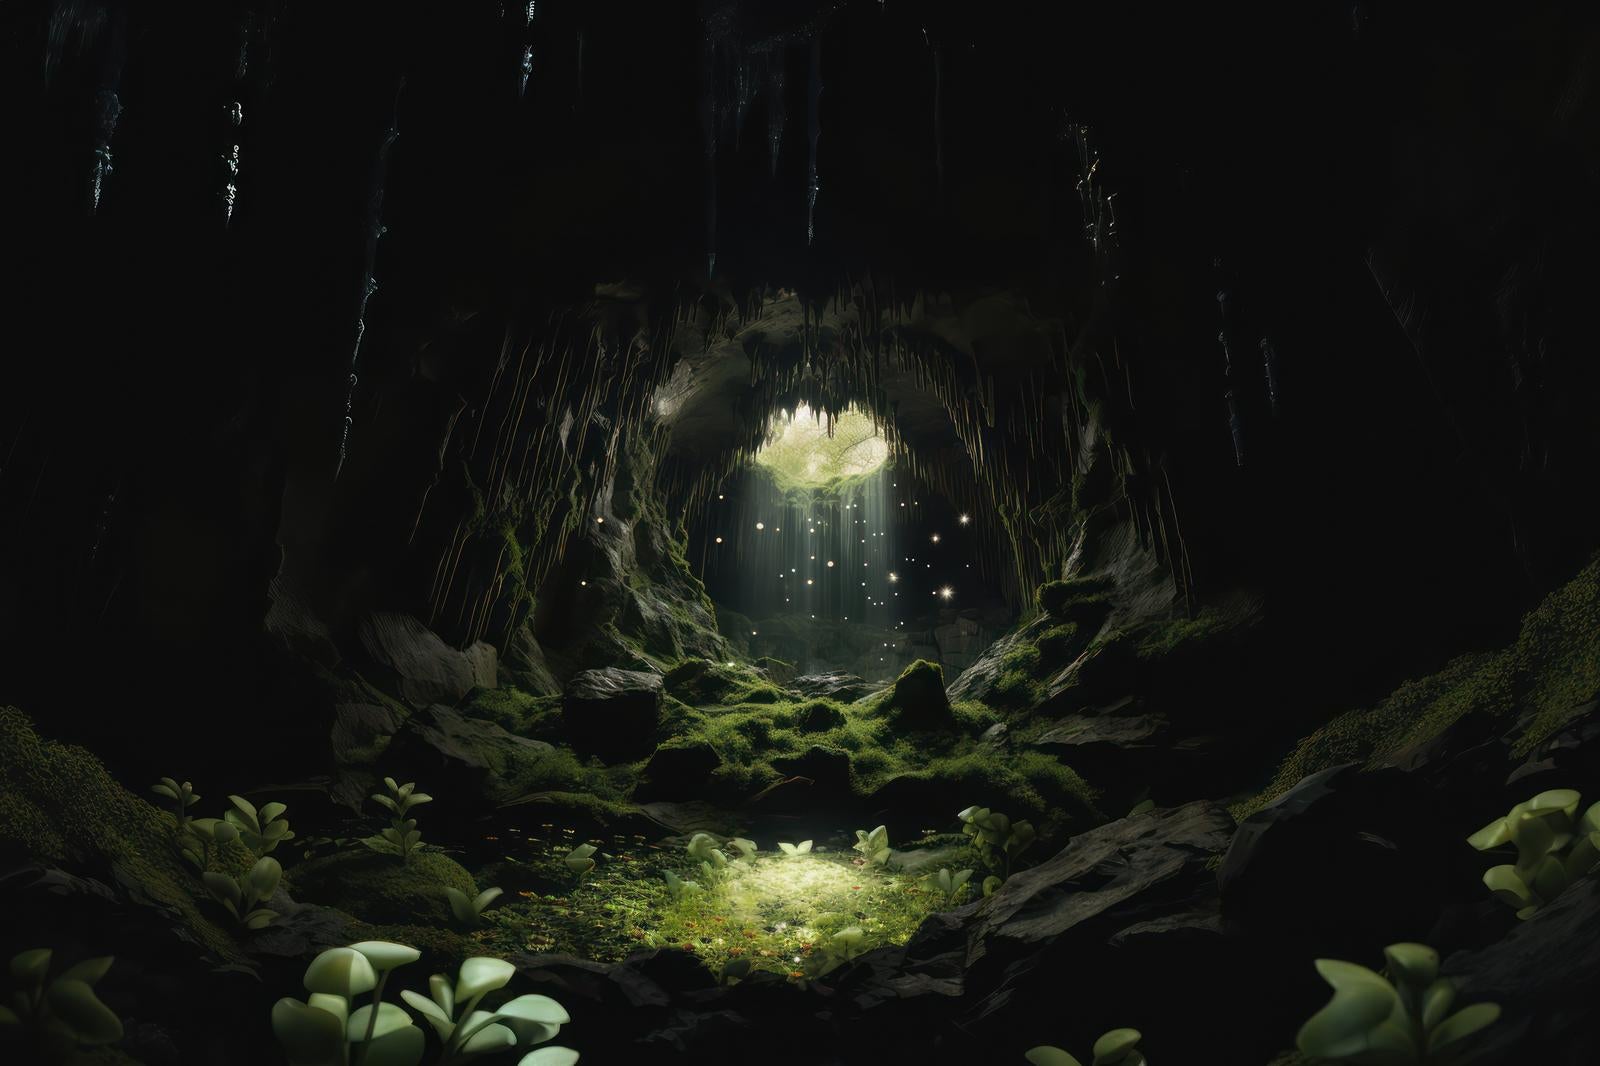 「鍾乳洞の息吹 洞窟の中に輝く生命の風景」の写真